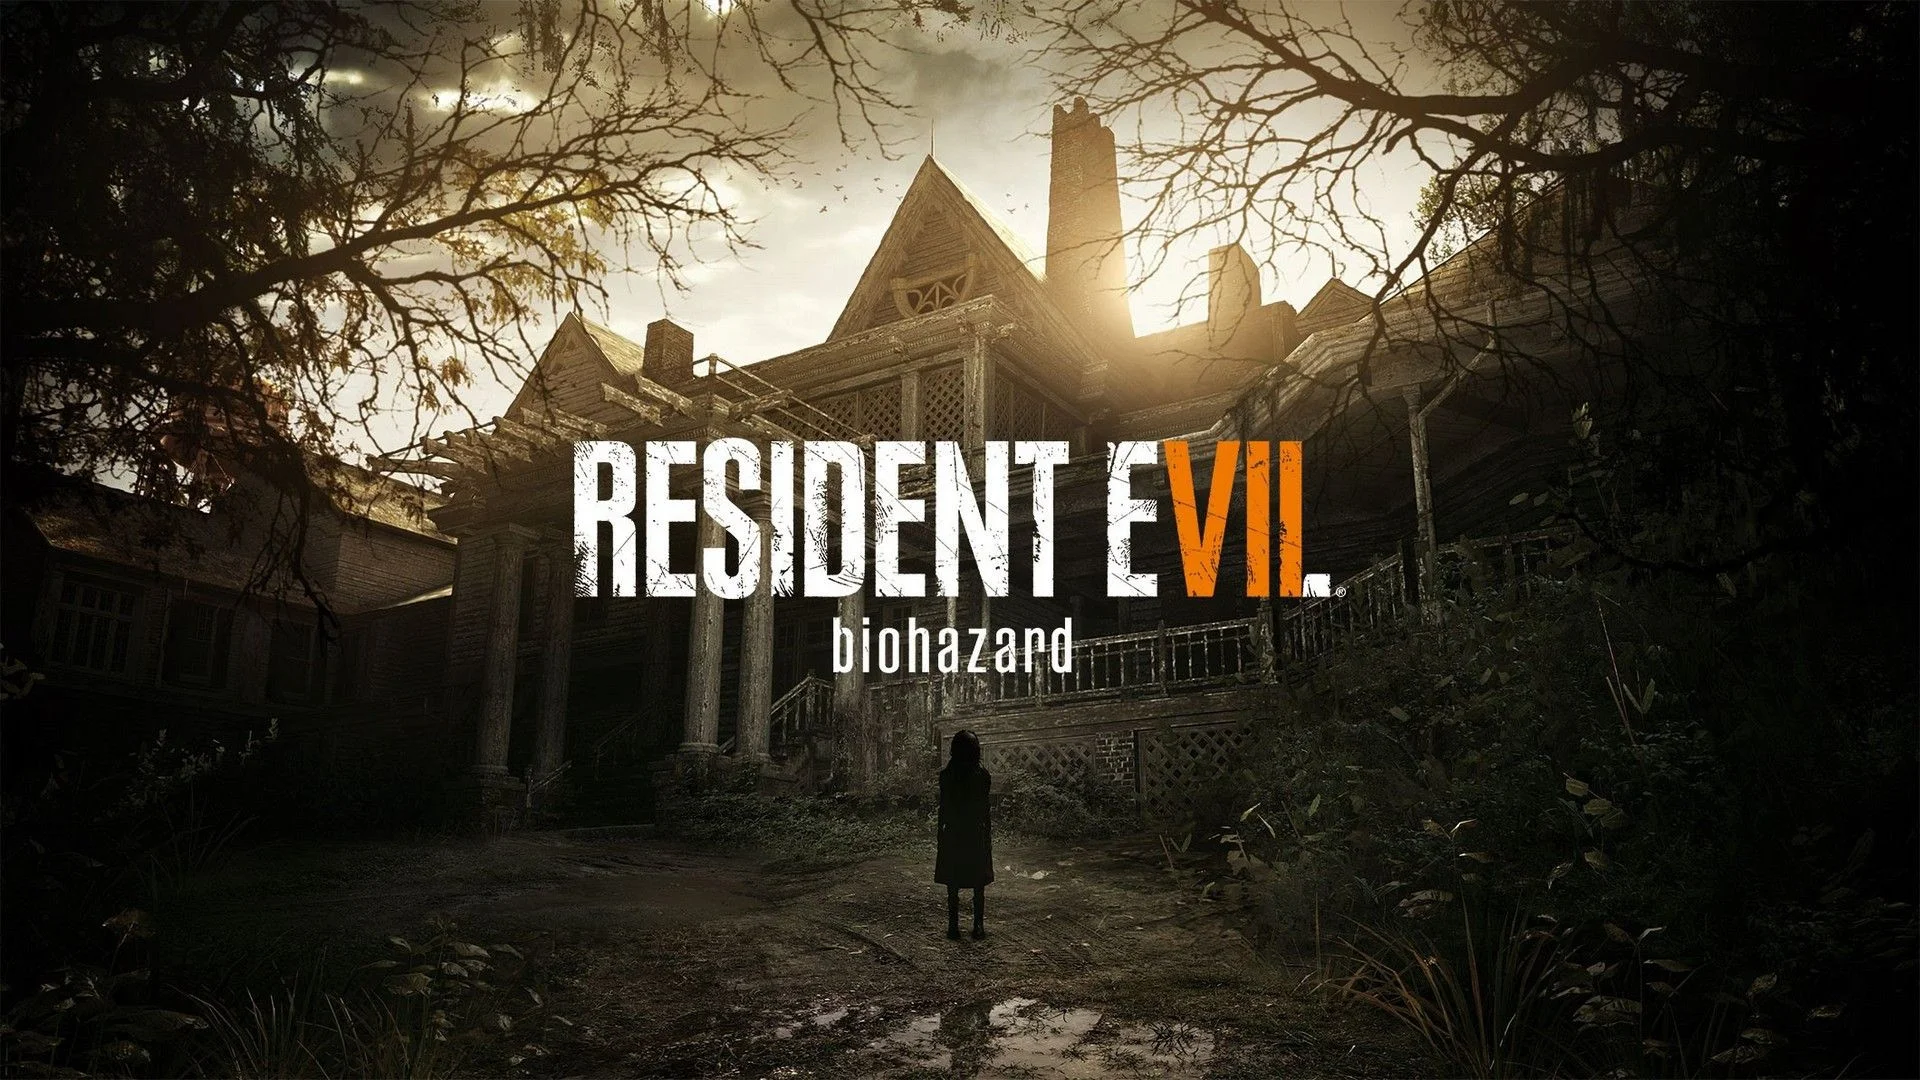 Краткий пересказ сюжета Resident Evil 7. Готовимся к свиданию с леди Димитреску в Resident Evil Village - изображение обложка